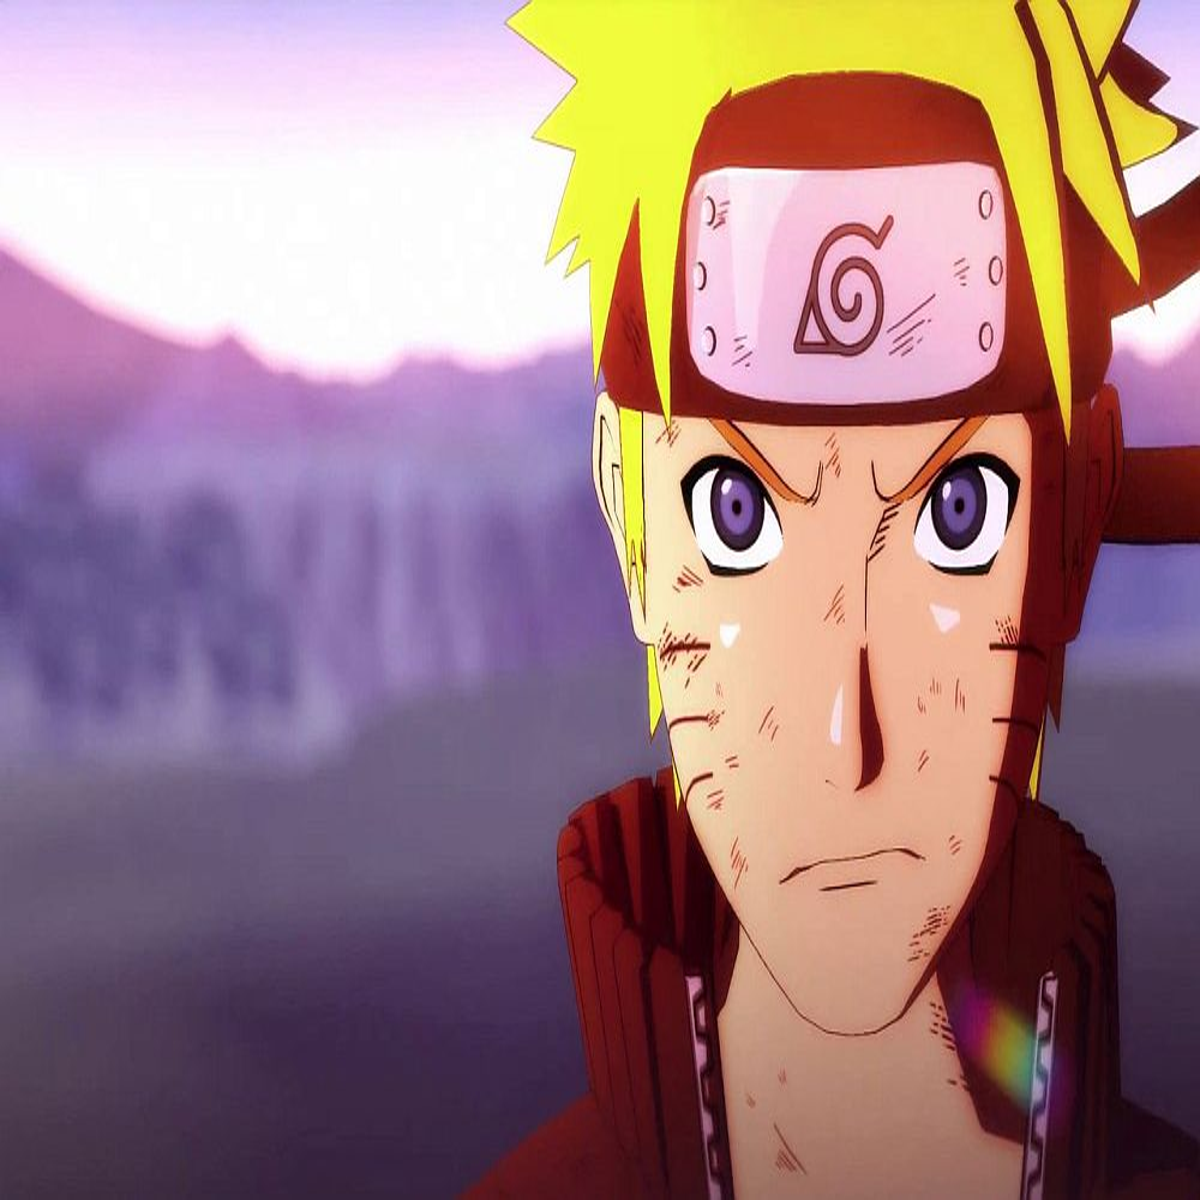 Boruto - Naruto the Movie Review • Anime UK News